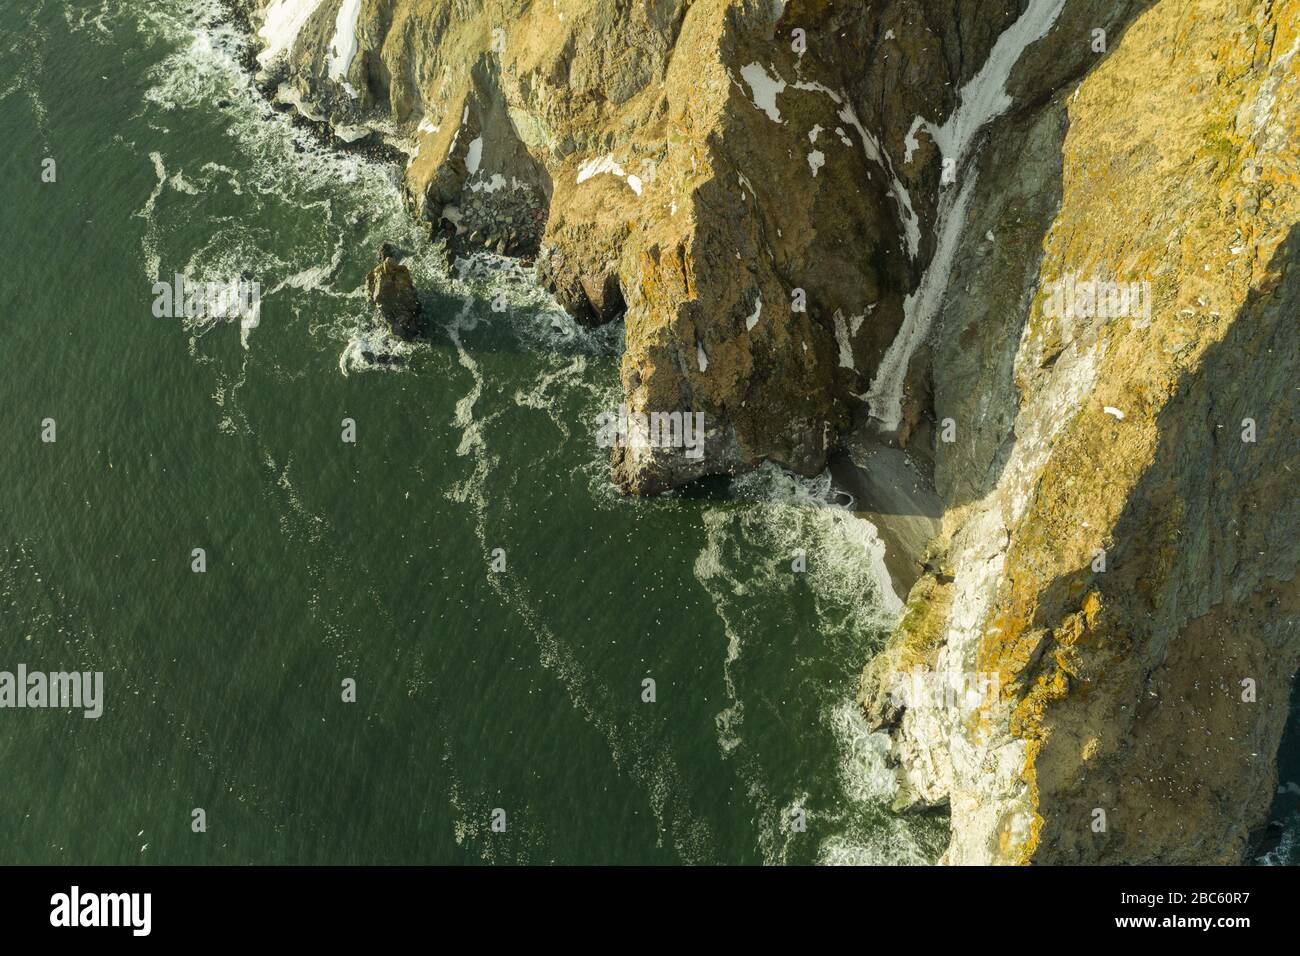 La vue de dessus sur la côte rocheuse nord-ouest de la mer de Béring, la région de Chukchi. Prise de vue depuis le dessus de la drone. Banque D'Images